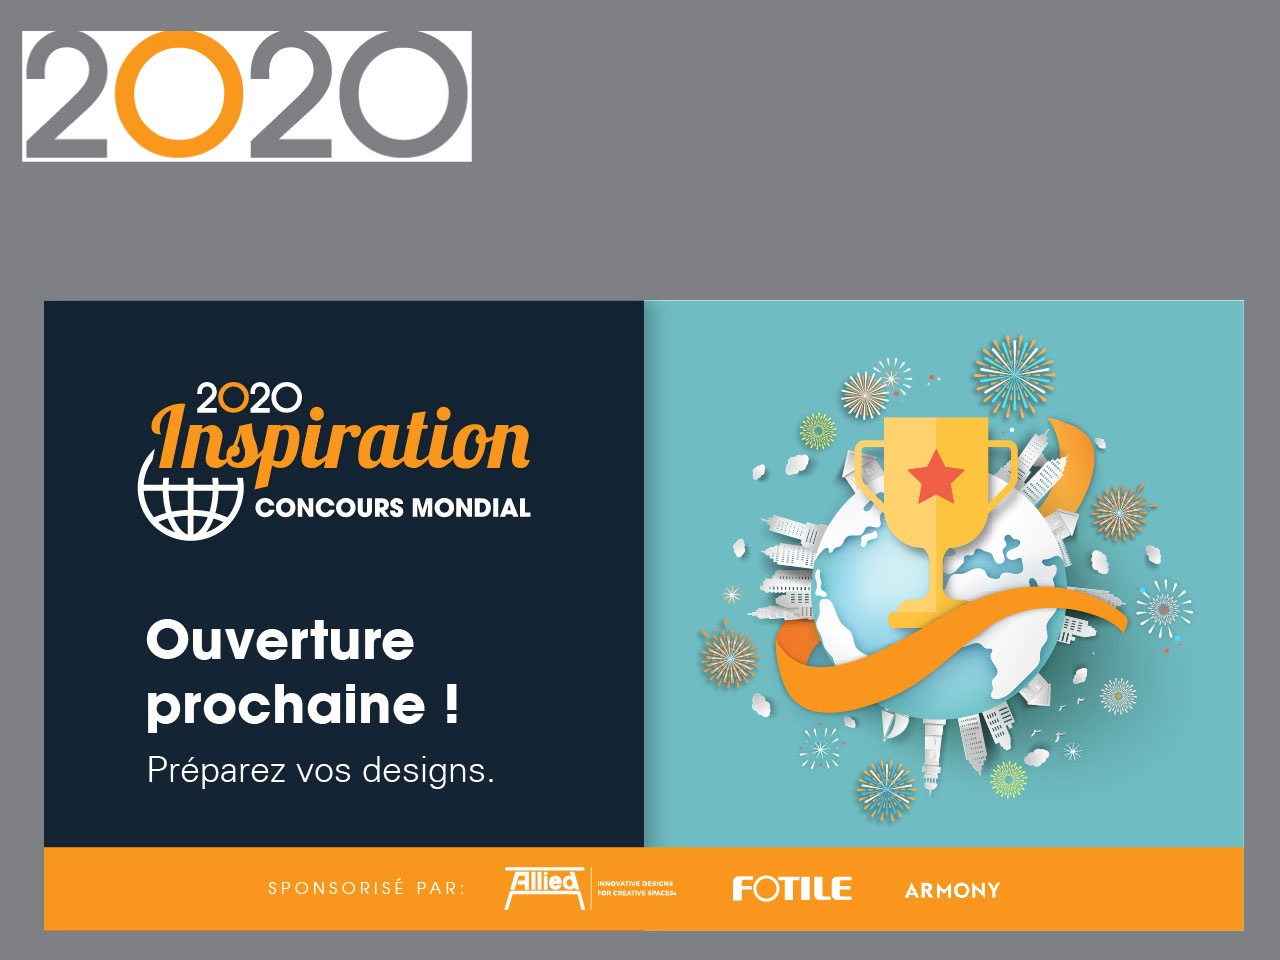 2020 lance INSPIRATION, le 1er concours mondial pour les concepteurs de cuisines, salles de bains et bureaux